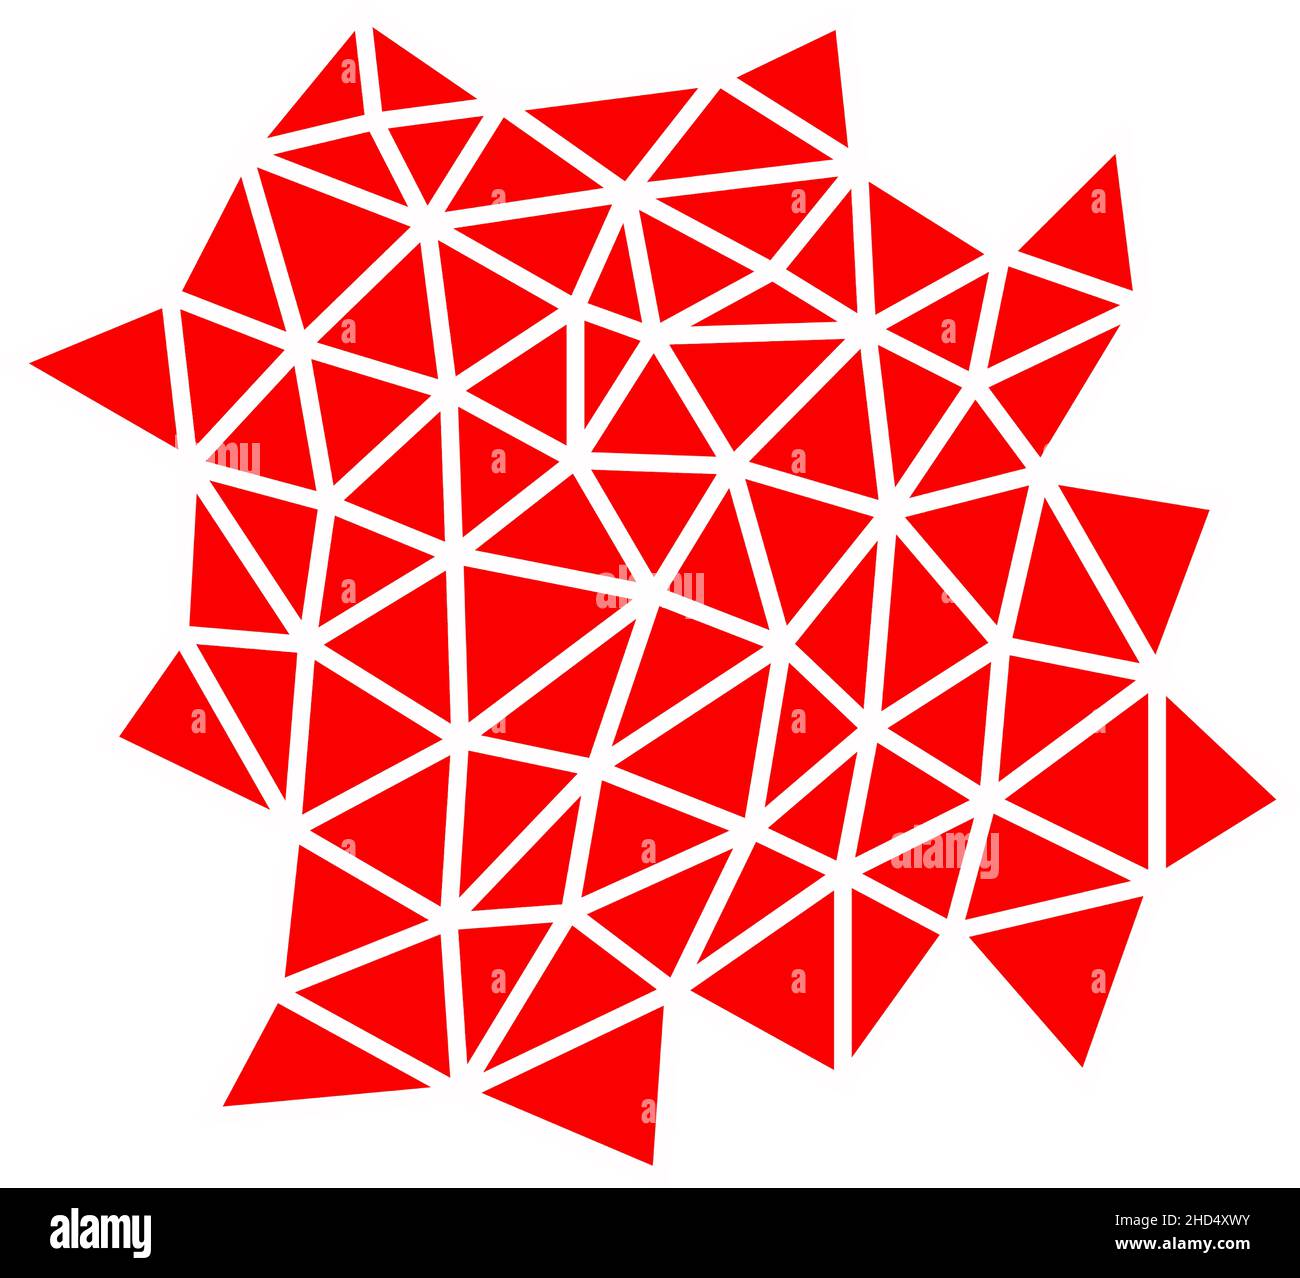 Abstrakter Hintergrund in Rot. Geometrische Formen in Form eines Spinnennetzes, karmesinrot. Es gibt viele Dreiecke in einer ungeordneten Anordnung. Rasterdarstellung. Stockfoto